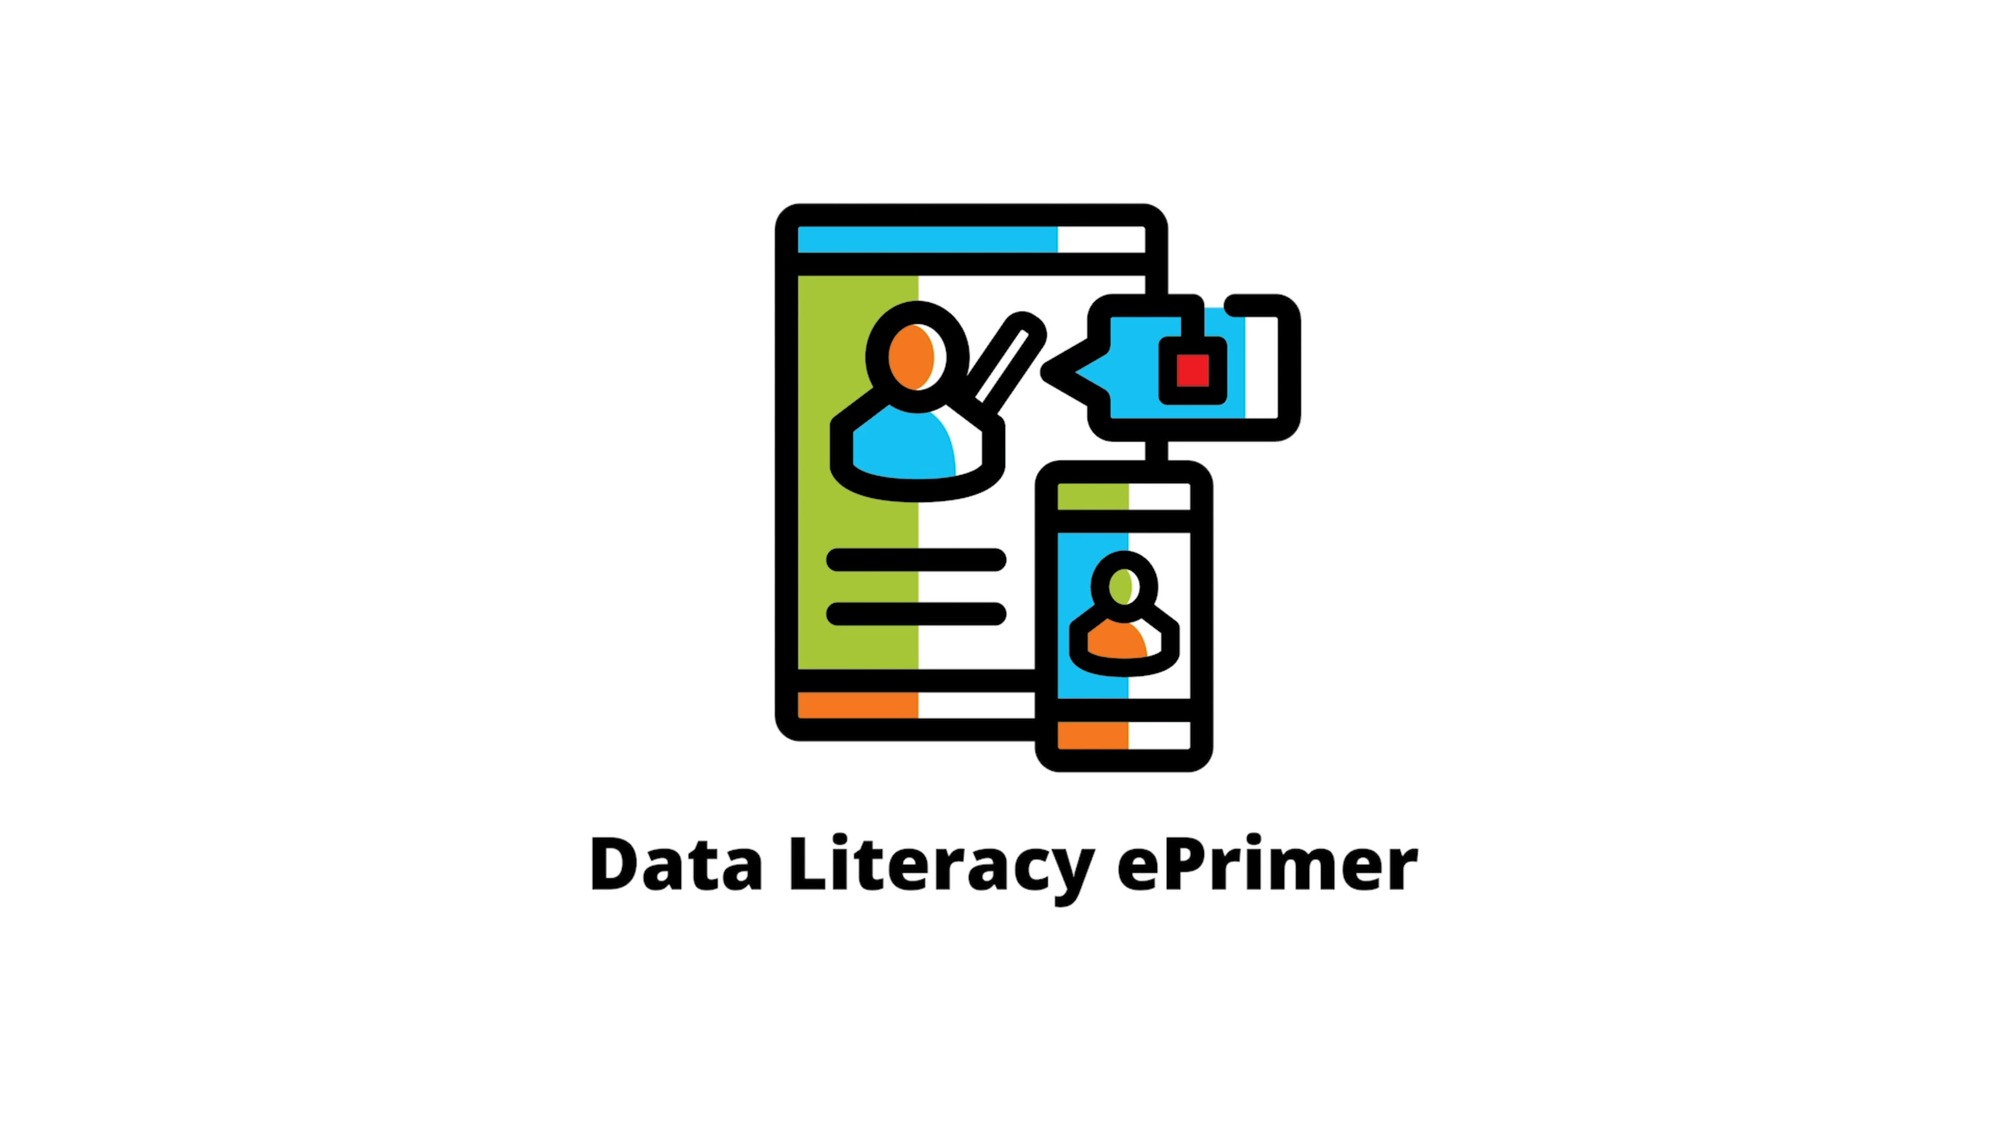 Navigate to GovTech: Data Literacy ePrimer